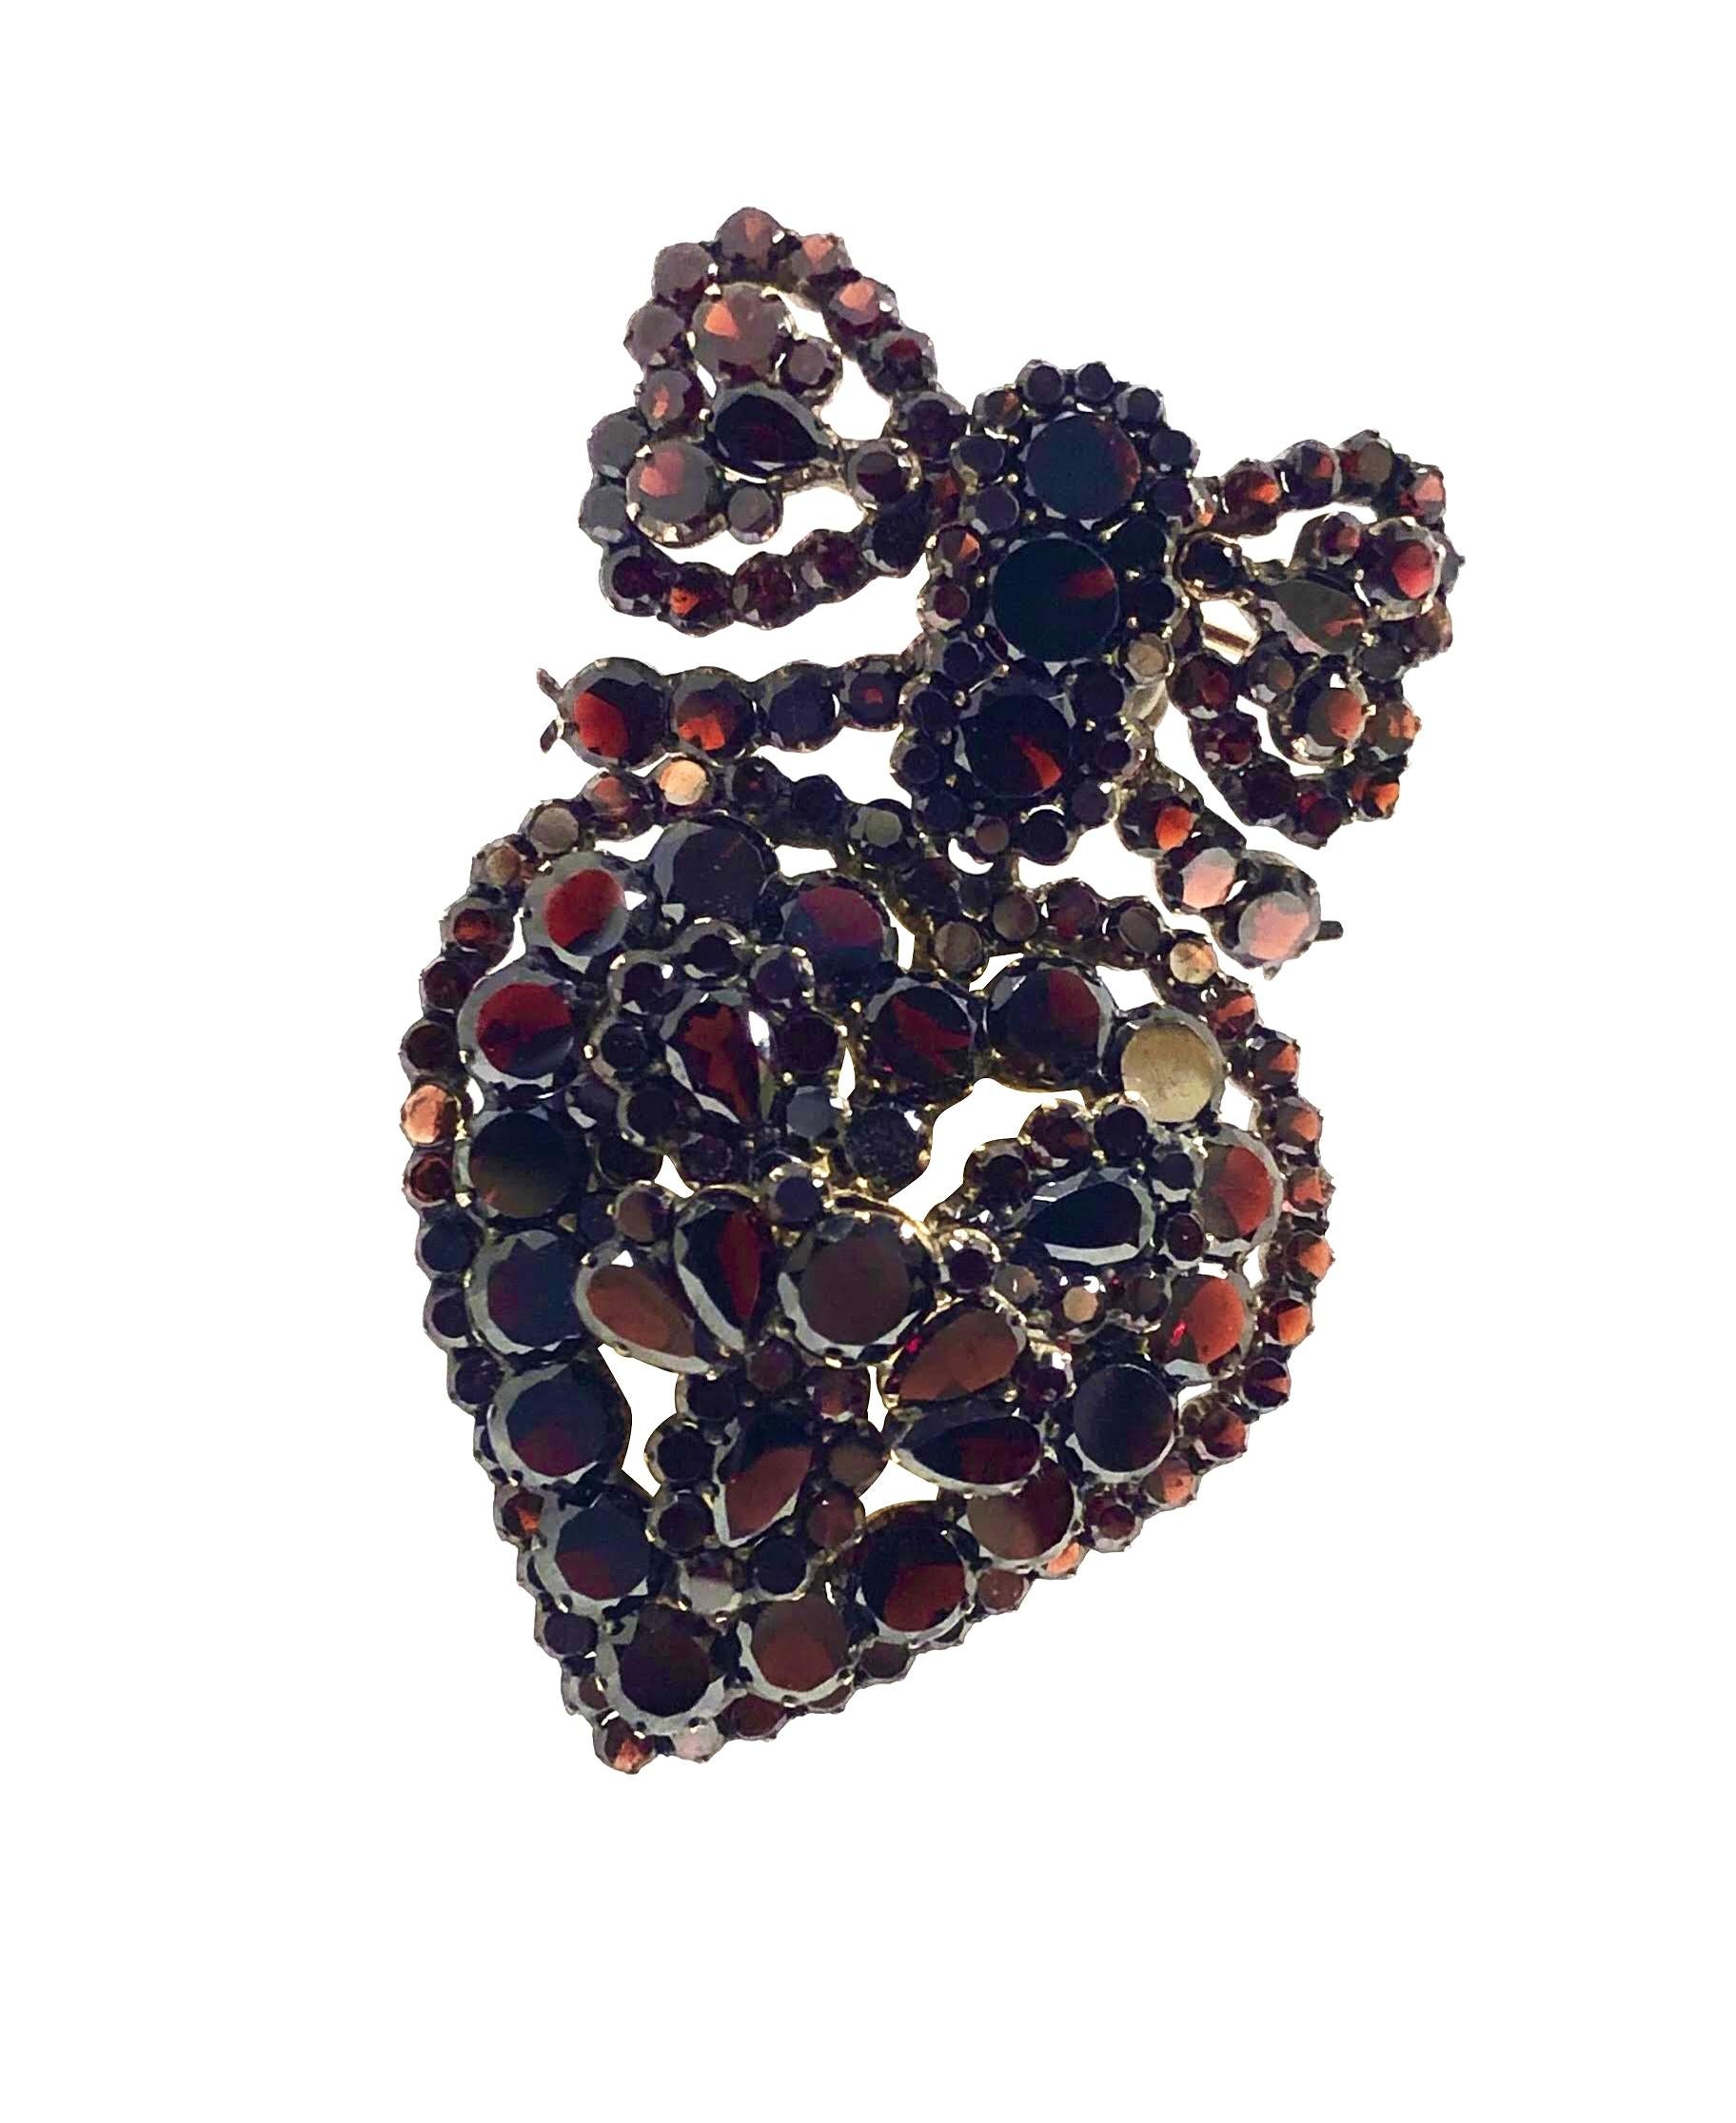 Circa 1900 - Pendentif en métal doré en forme de cœur avec un nœud de broche attaché, mesurant 2 1/4 pouces de longueur et 1 1/2 pouces de largeur, serti de grenats de Bohème, ronds et en forme de poire, le dos du cœur a un compartiment couvert de